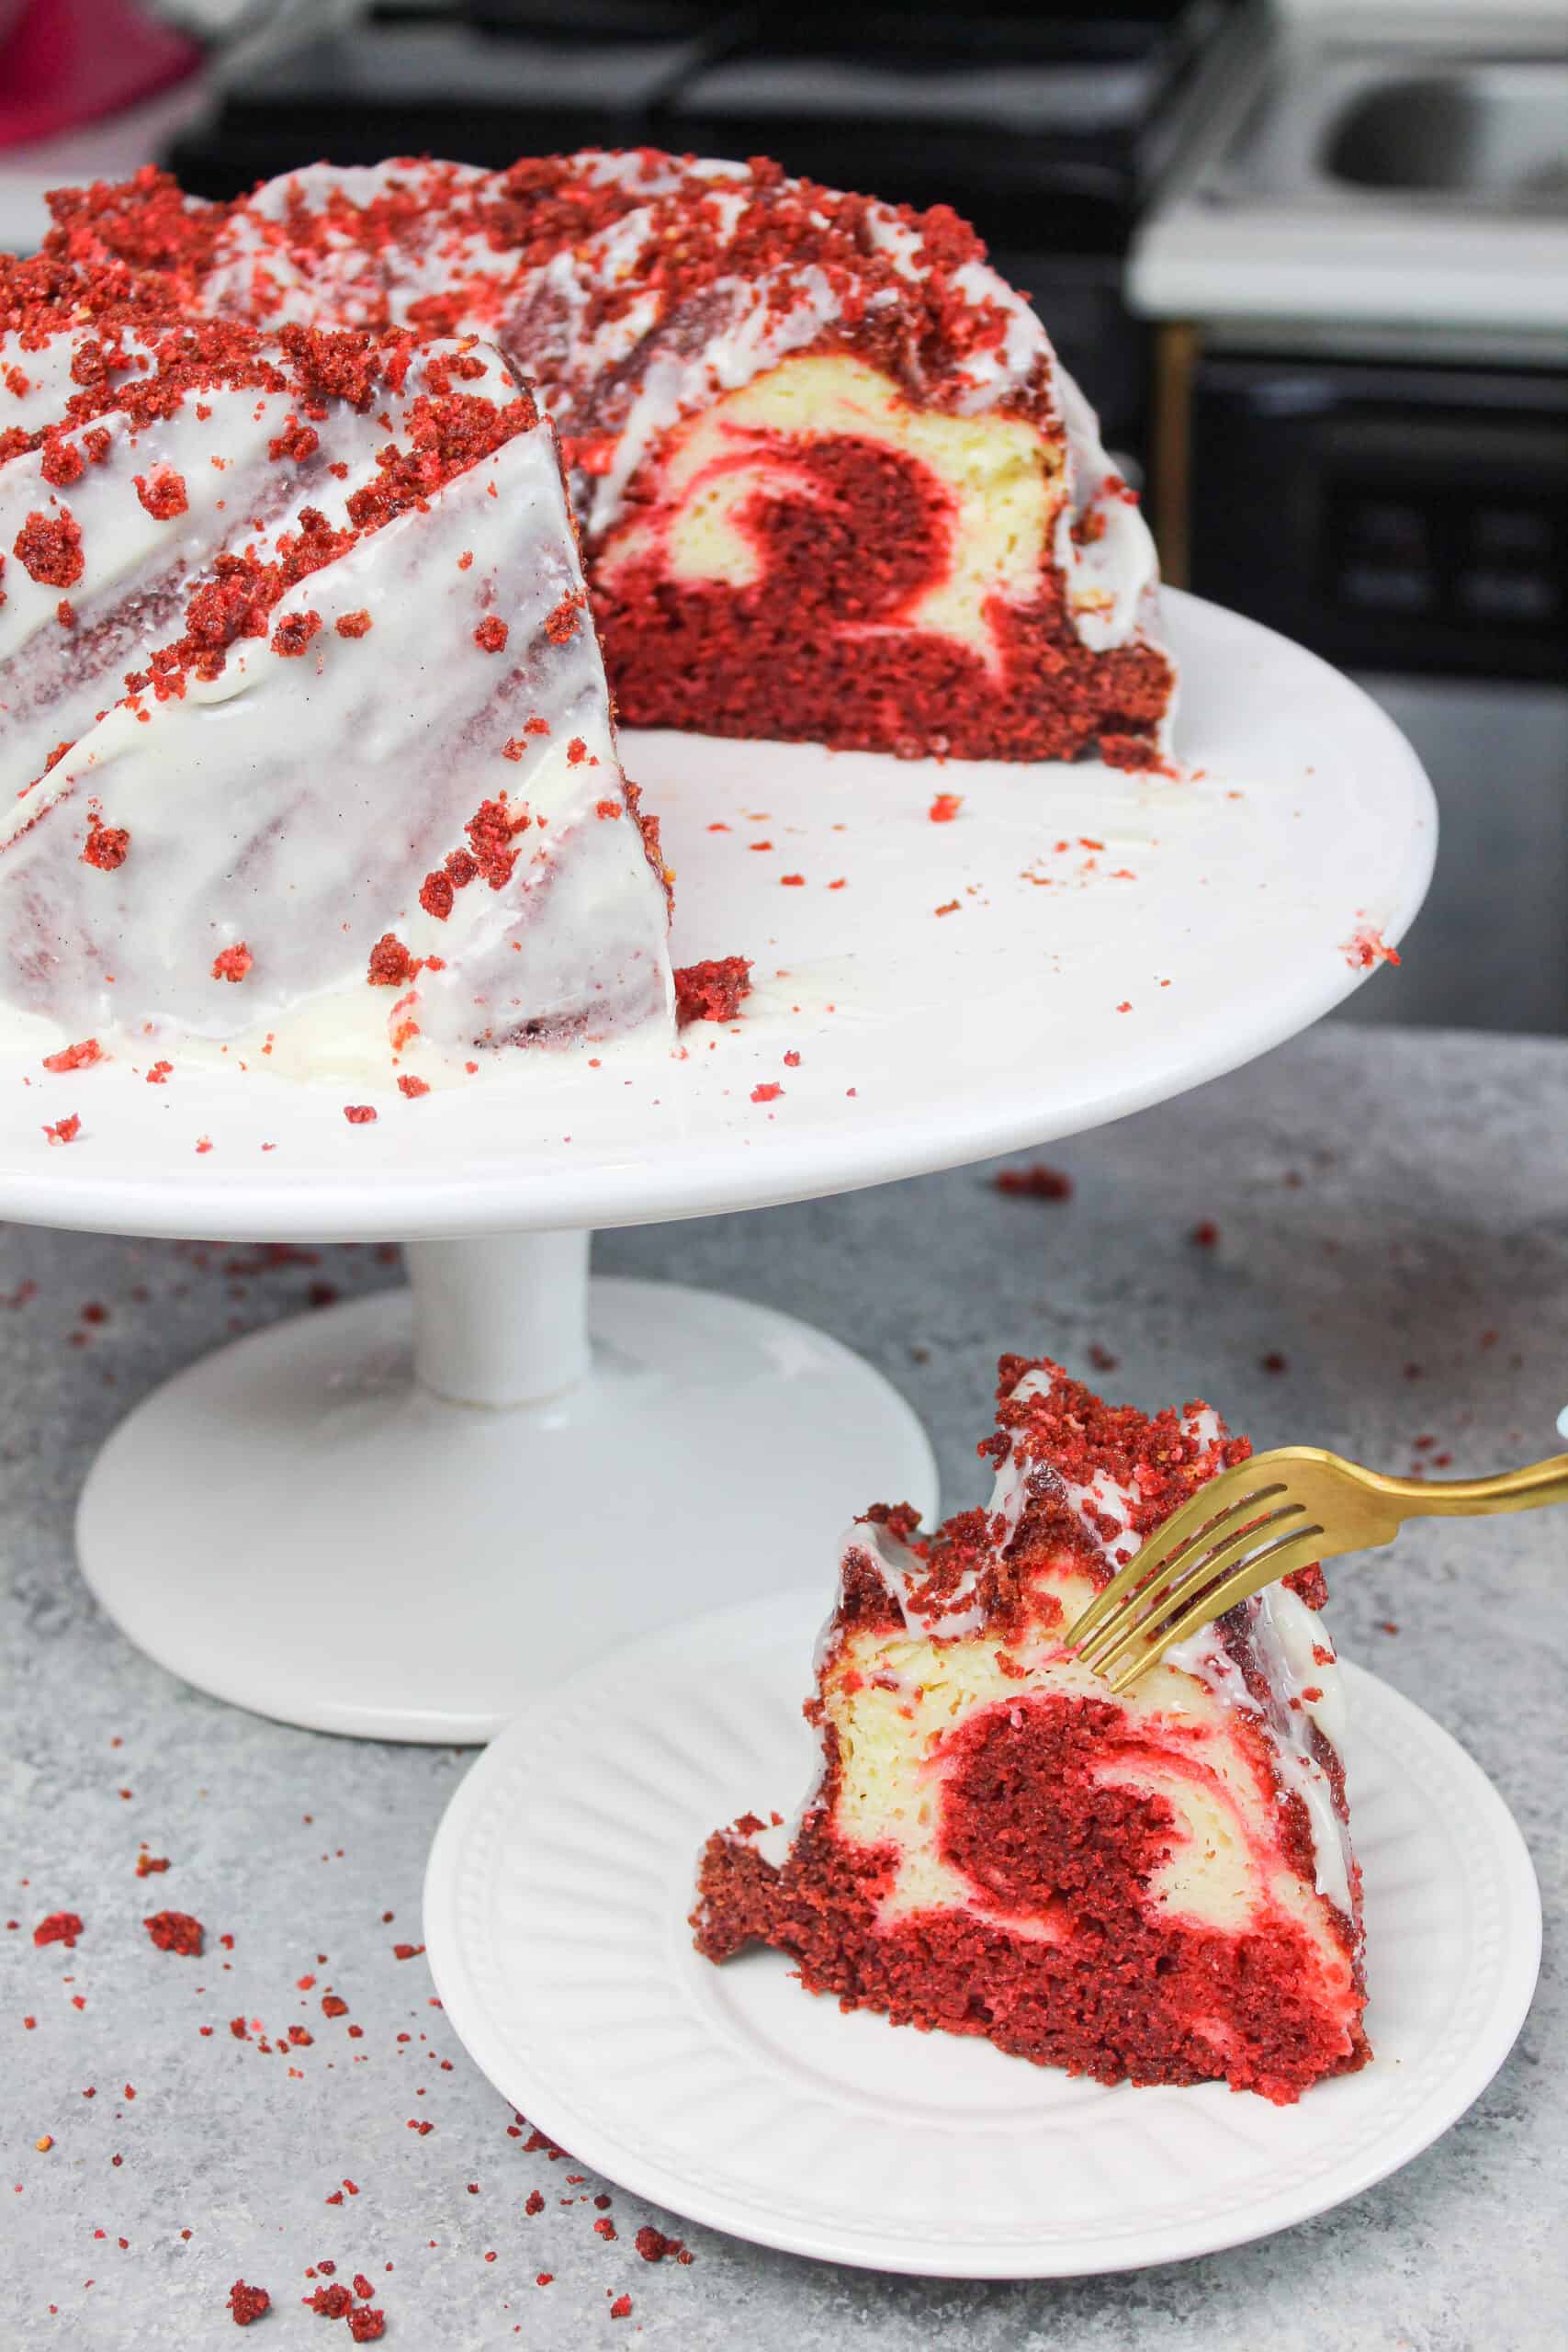 Blue-Ribbon Red Velvet Cake Recipe: How to Make It